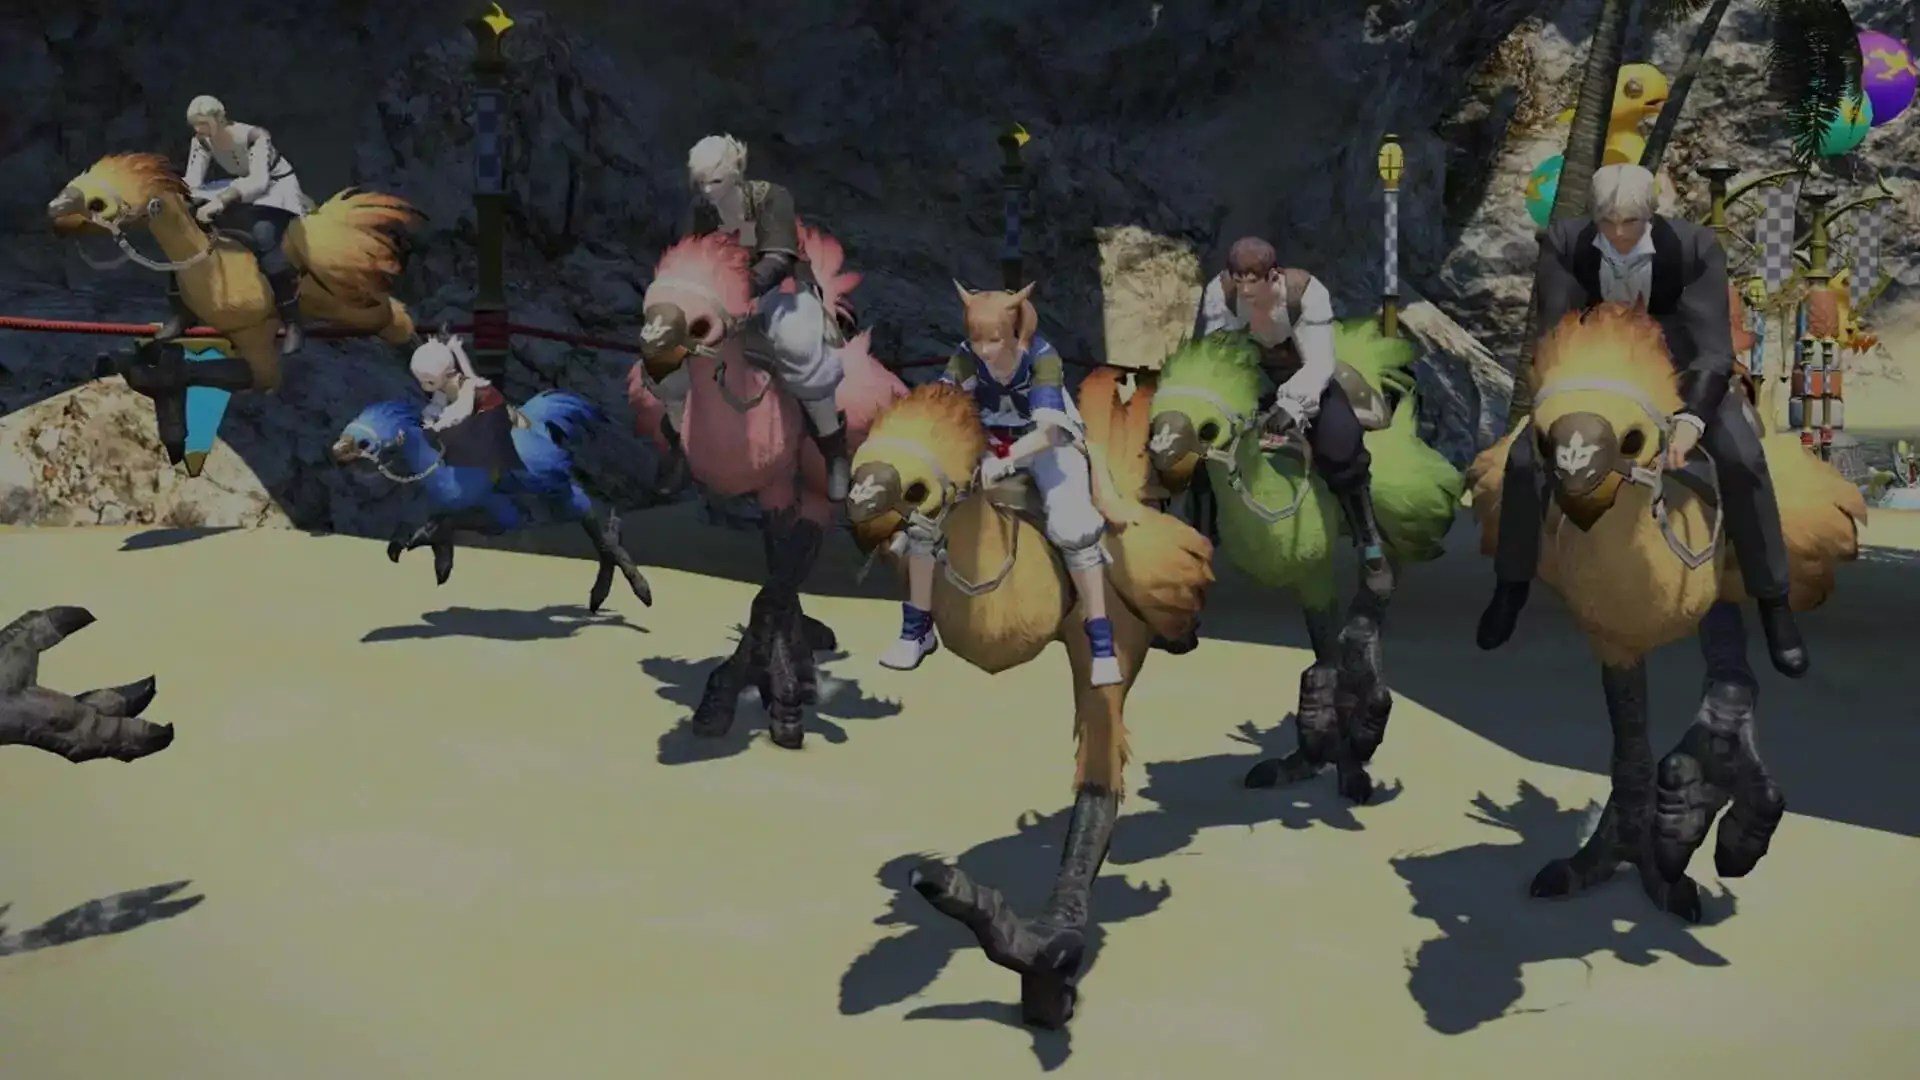 Sechs Charaktere reiten auf ihren verschiedenfarbigen Chocobos um die Wette.